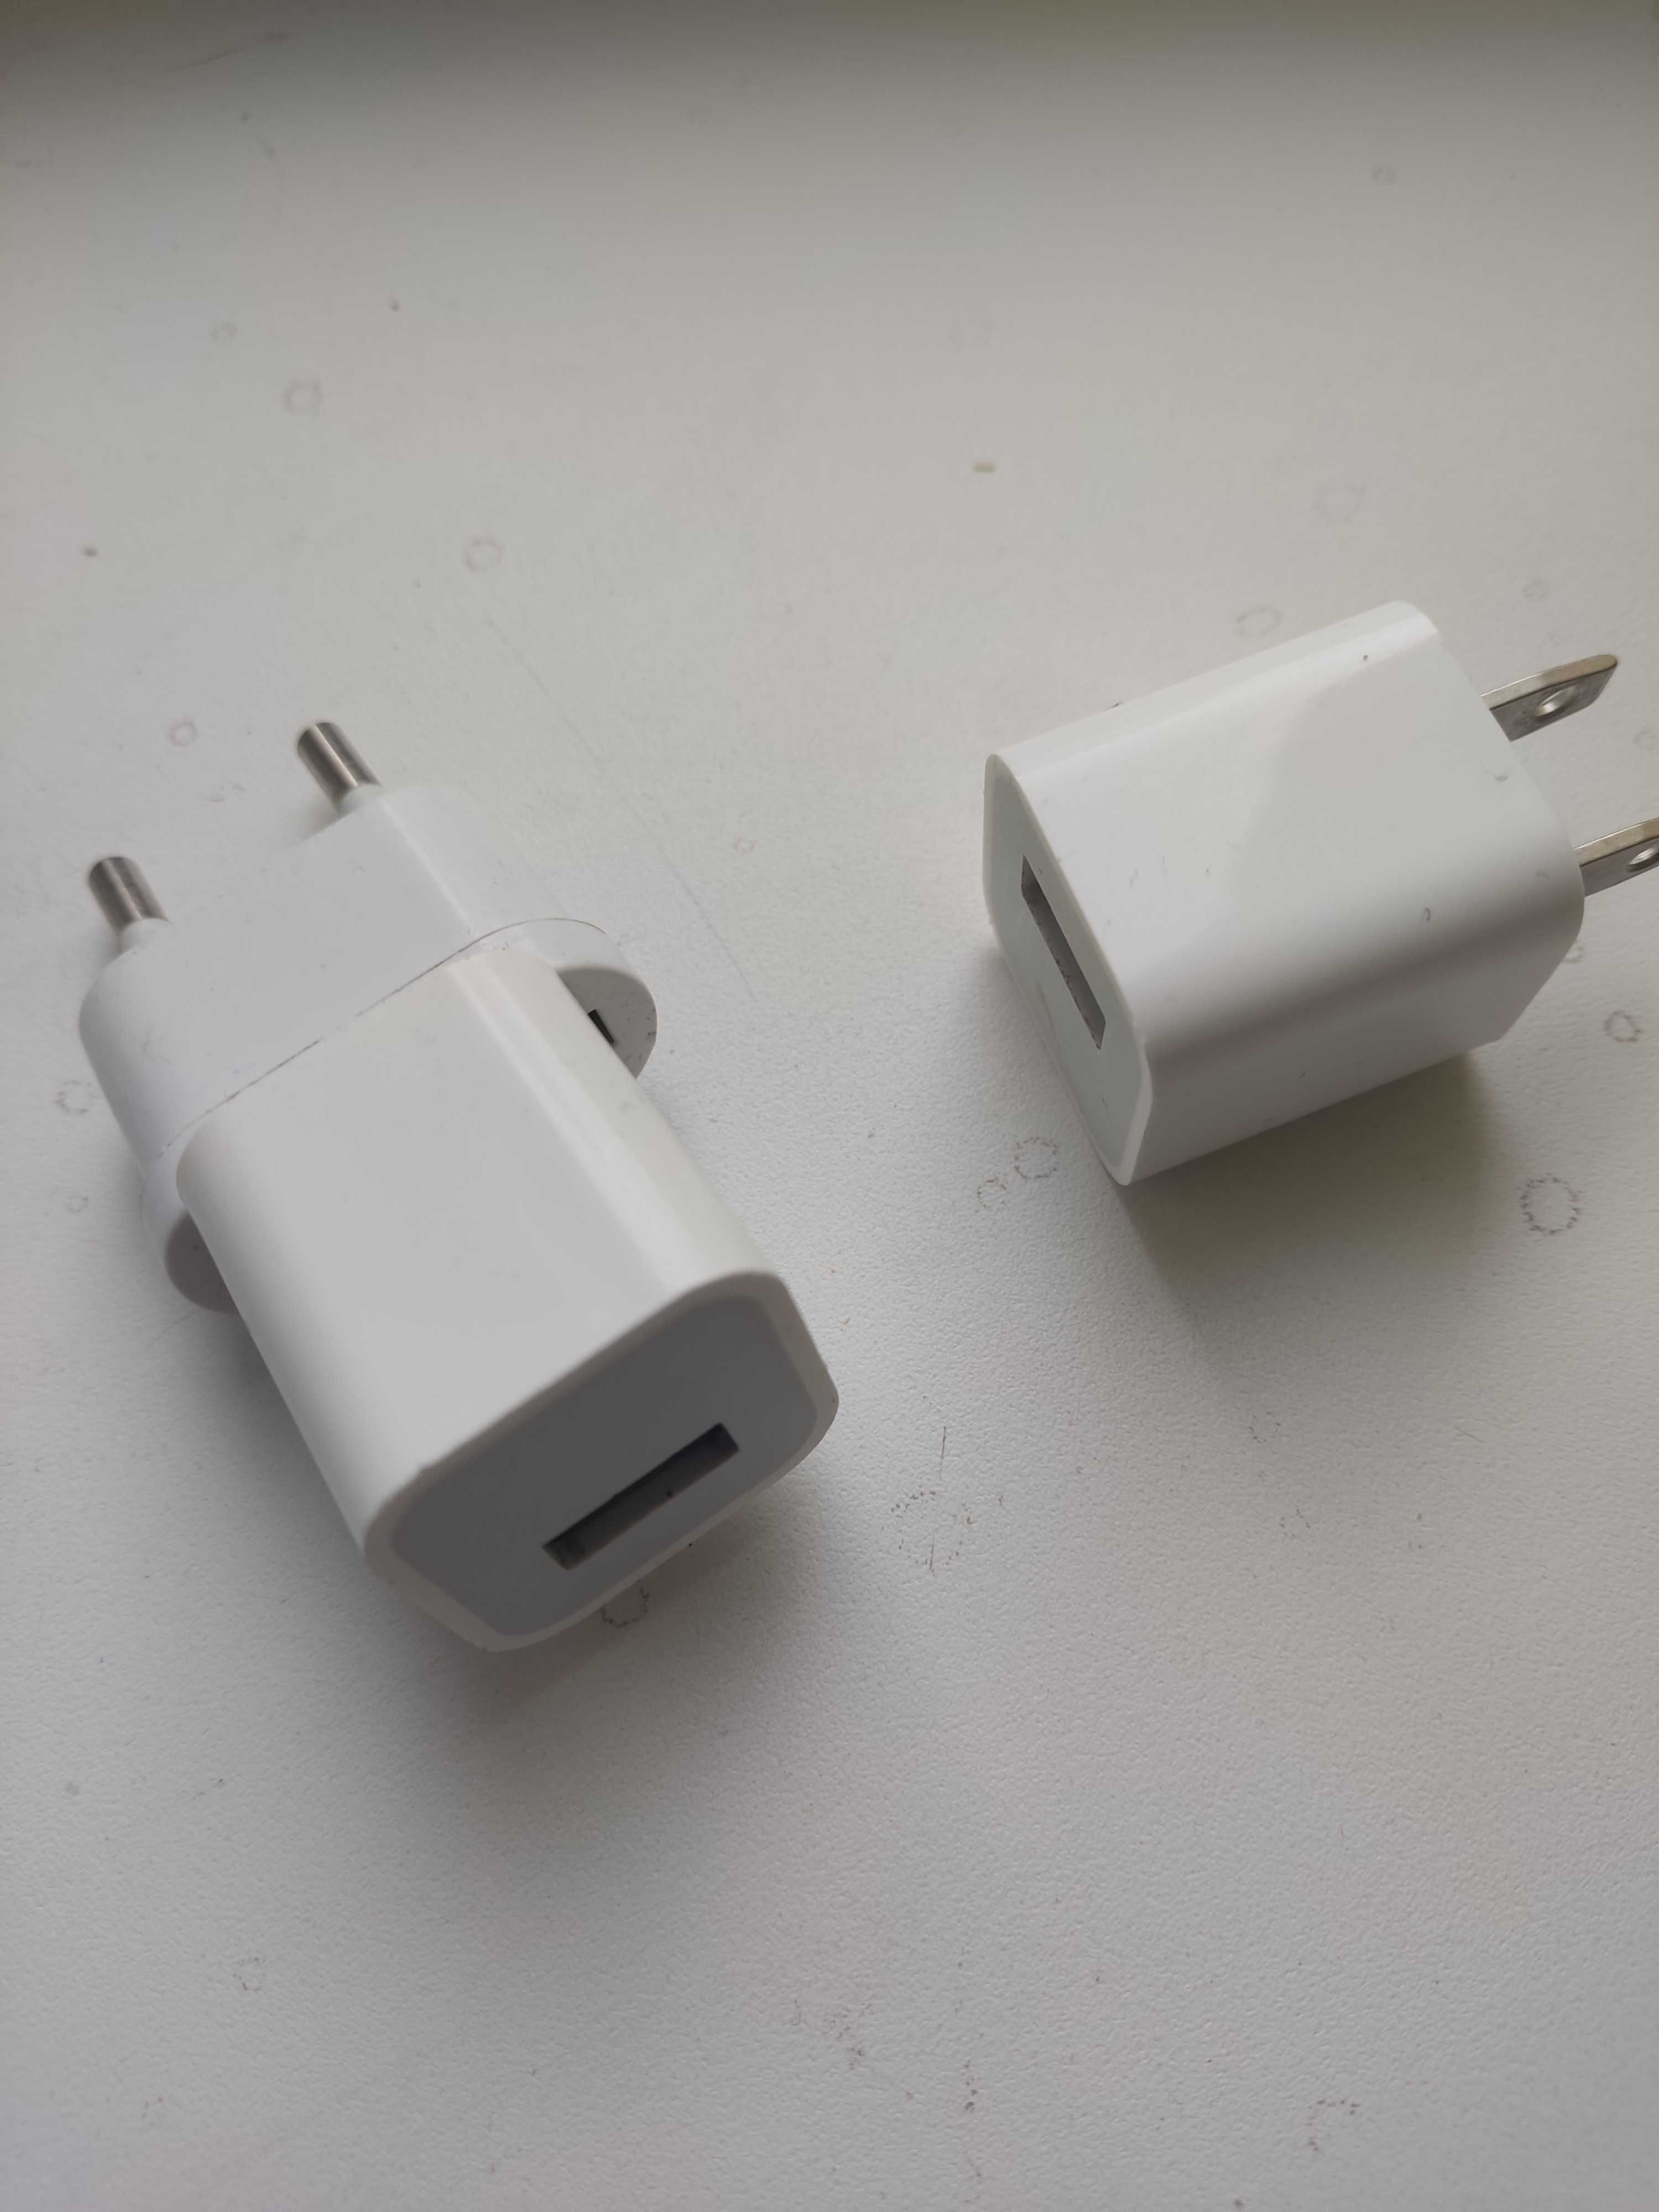 Зарядка Apple USB Power Adapter, 5 V~1А. Оригинал